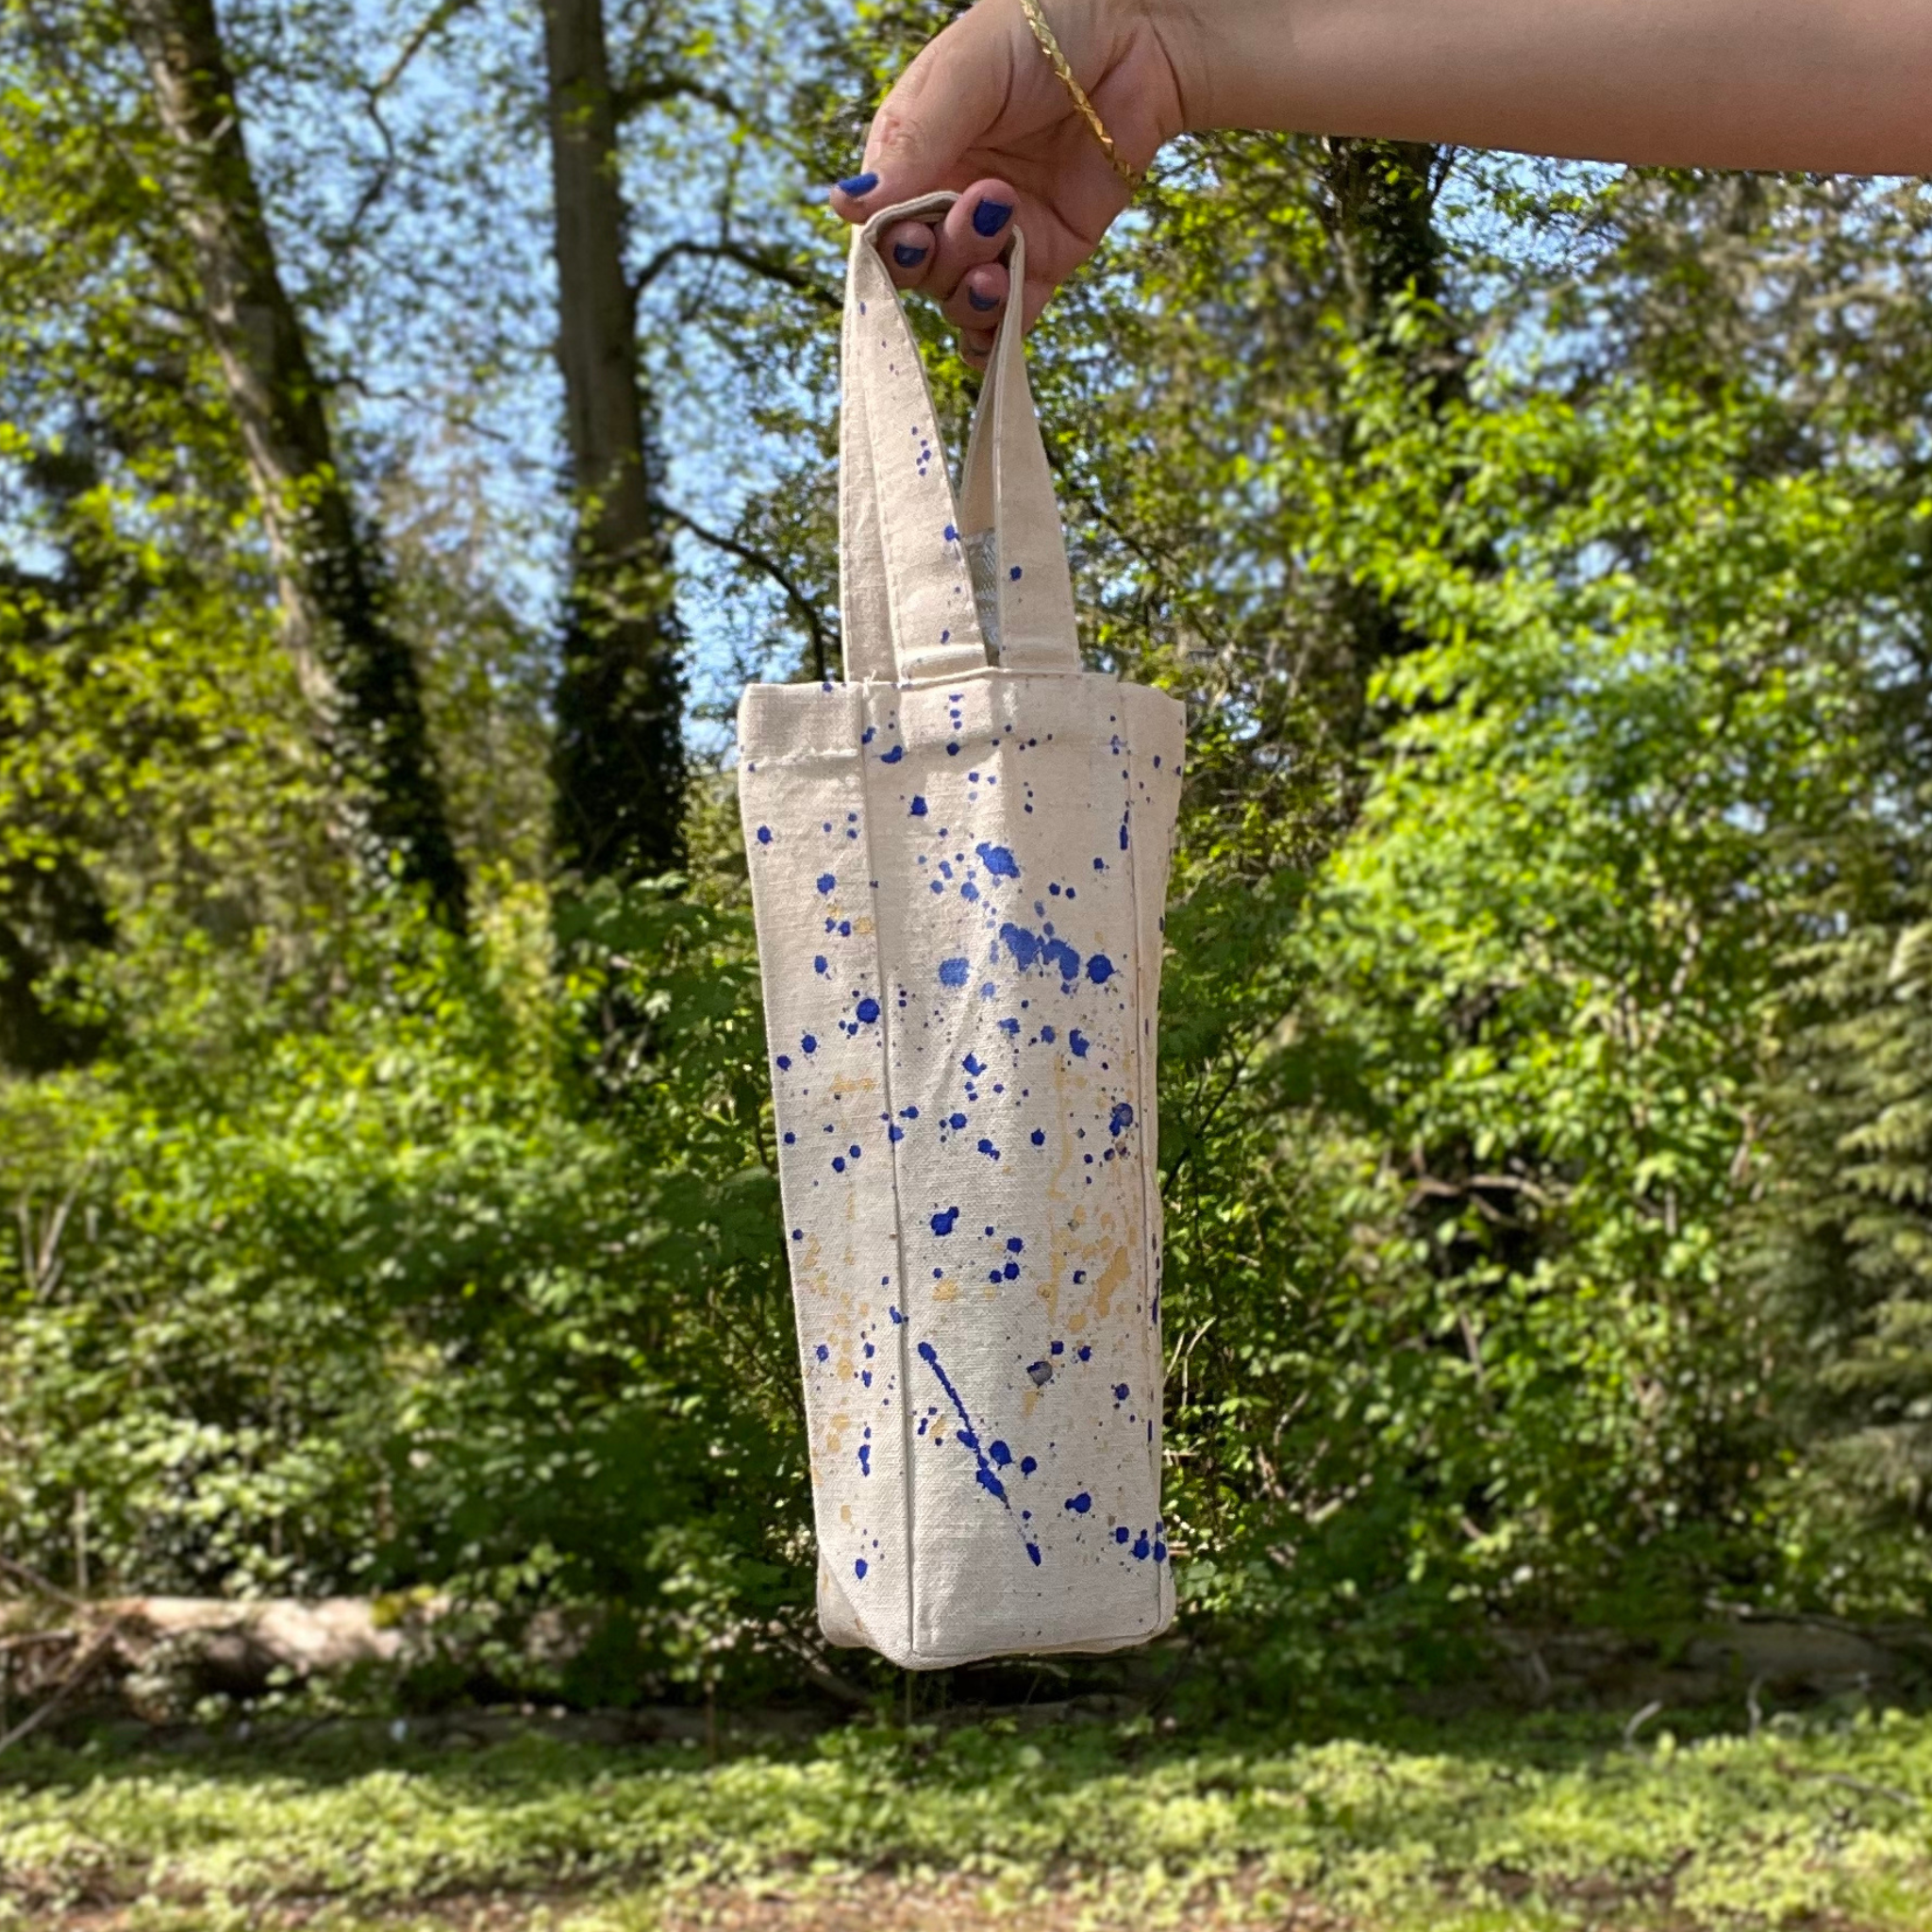 Picnic Wine Tote Bag - BLUE/GOLD Splatter